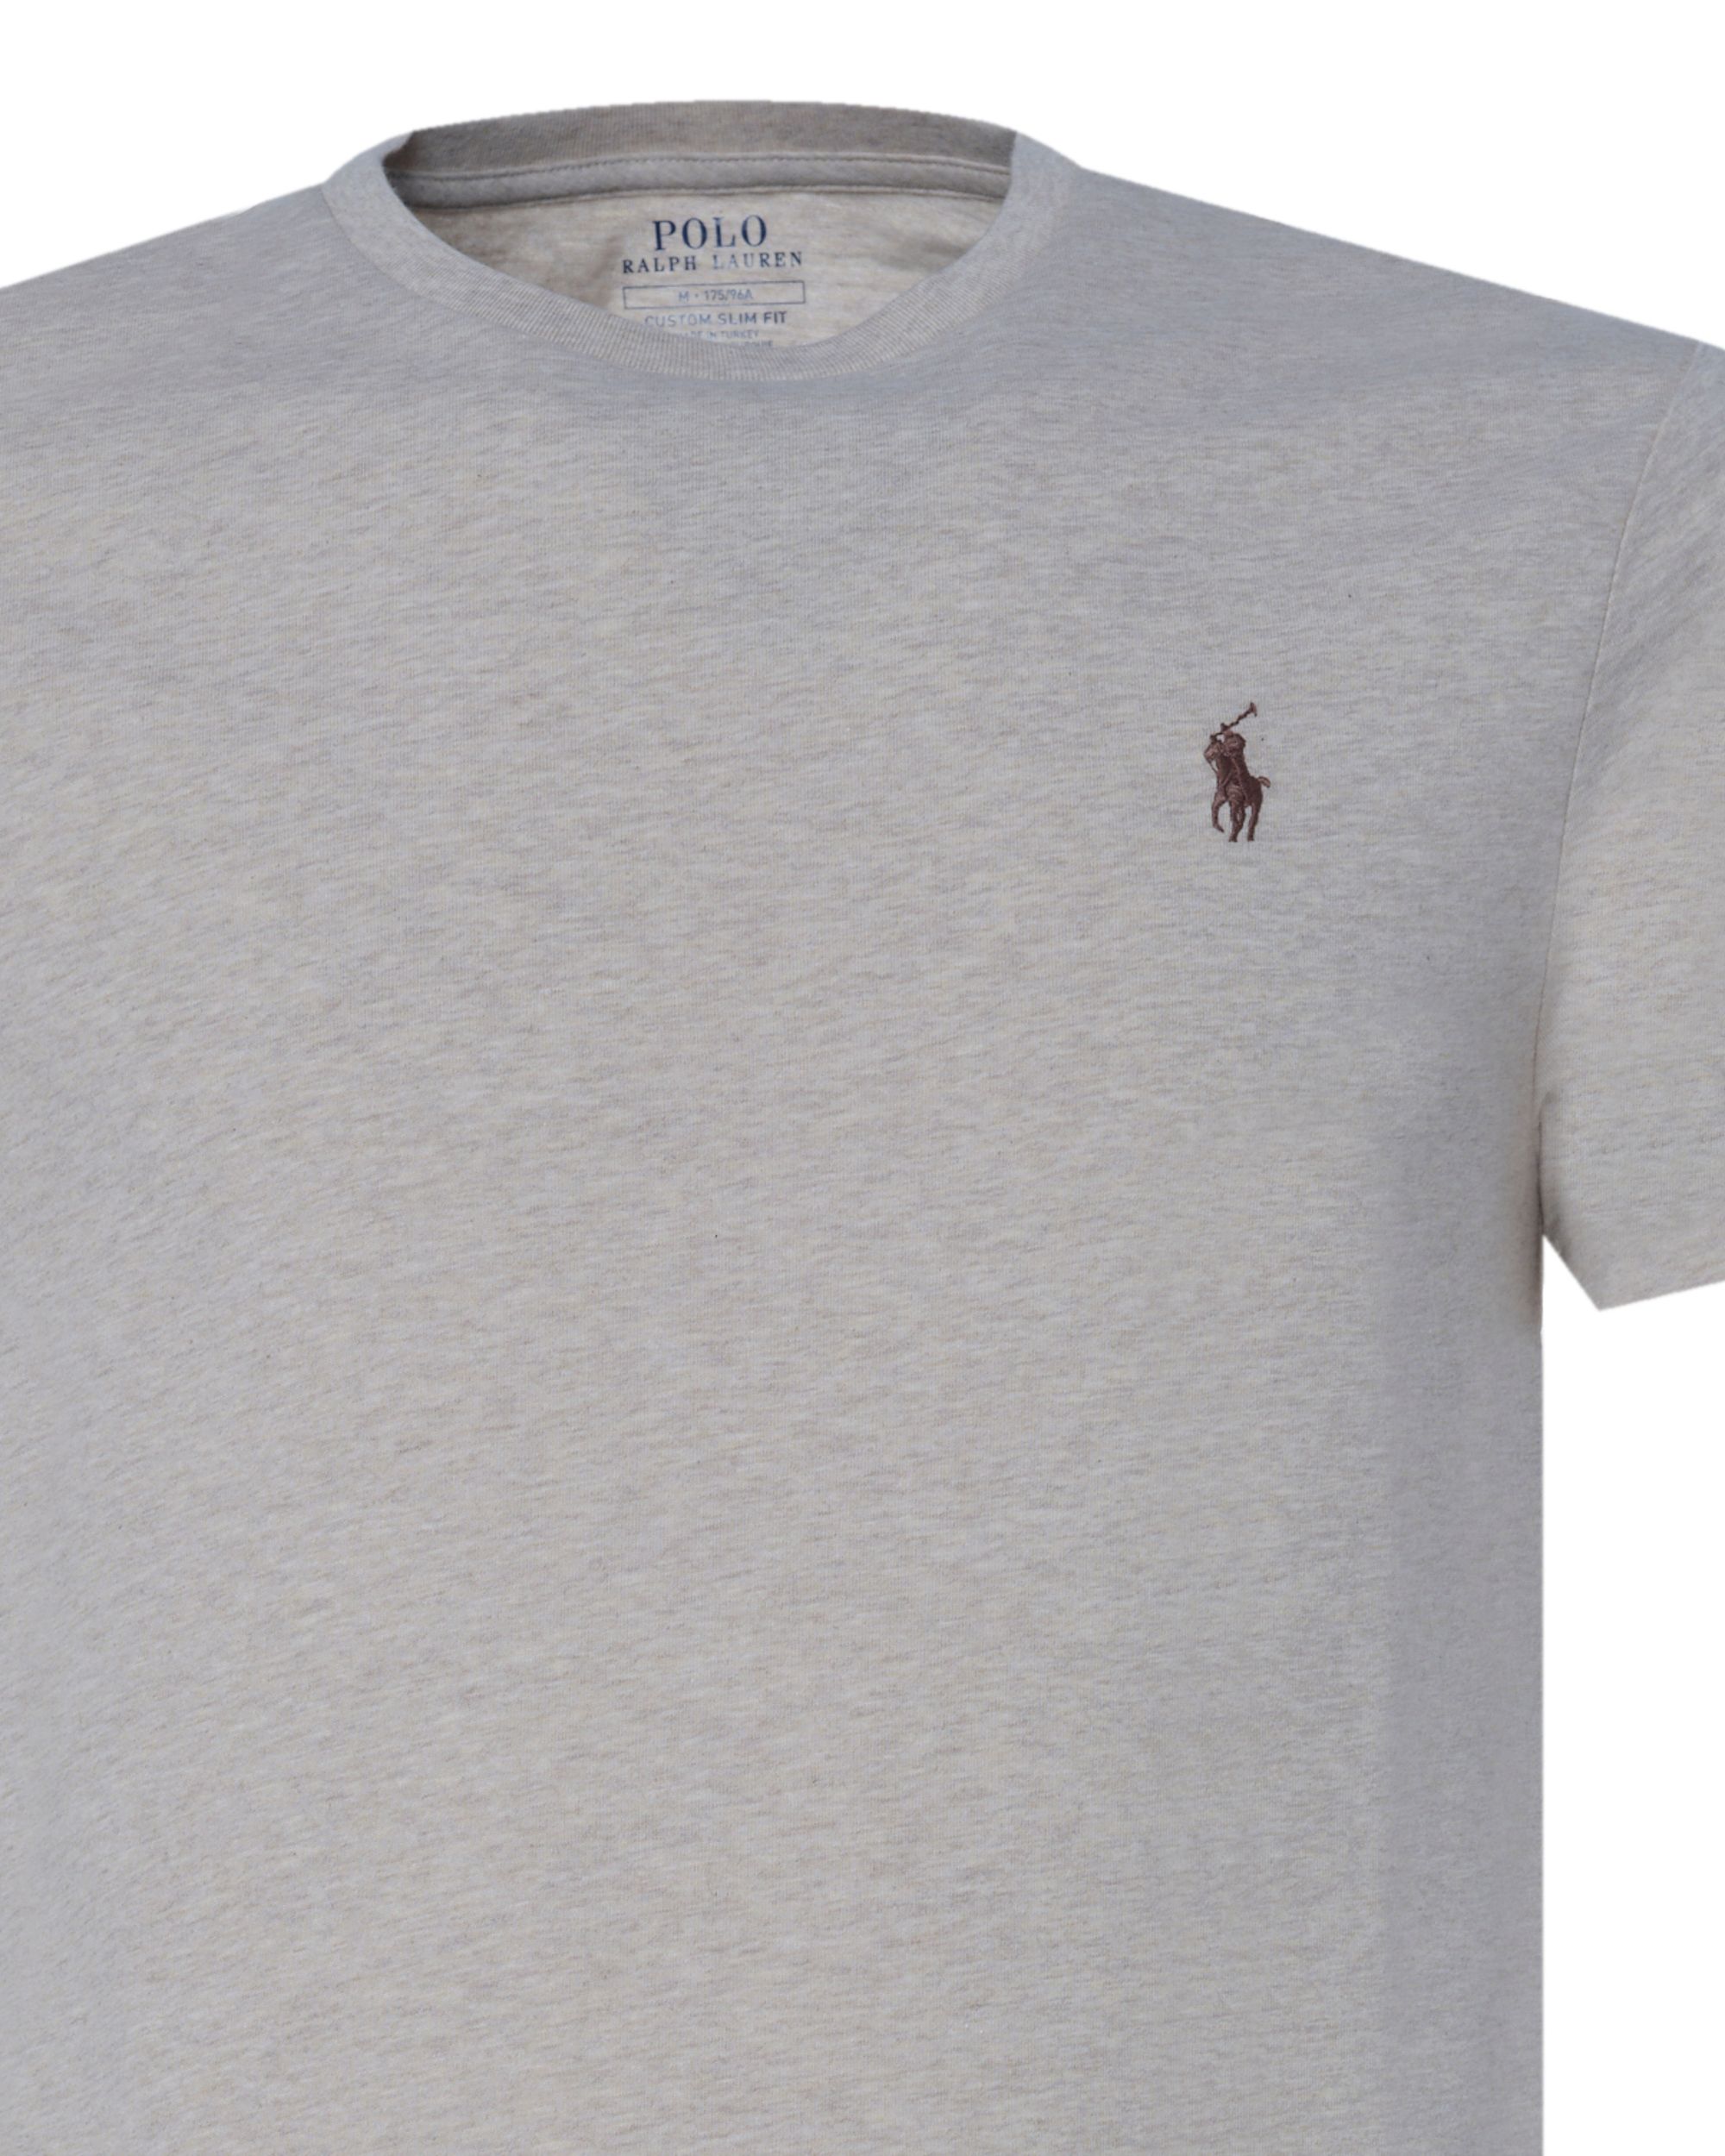 Polo Ralph Lauren - T-shirt KM Sand 081437-001-L